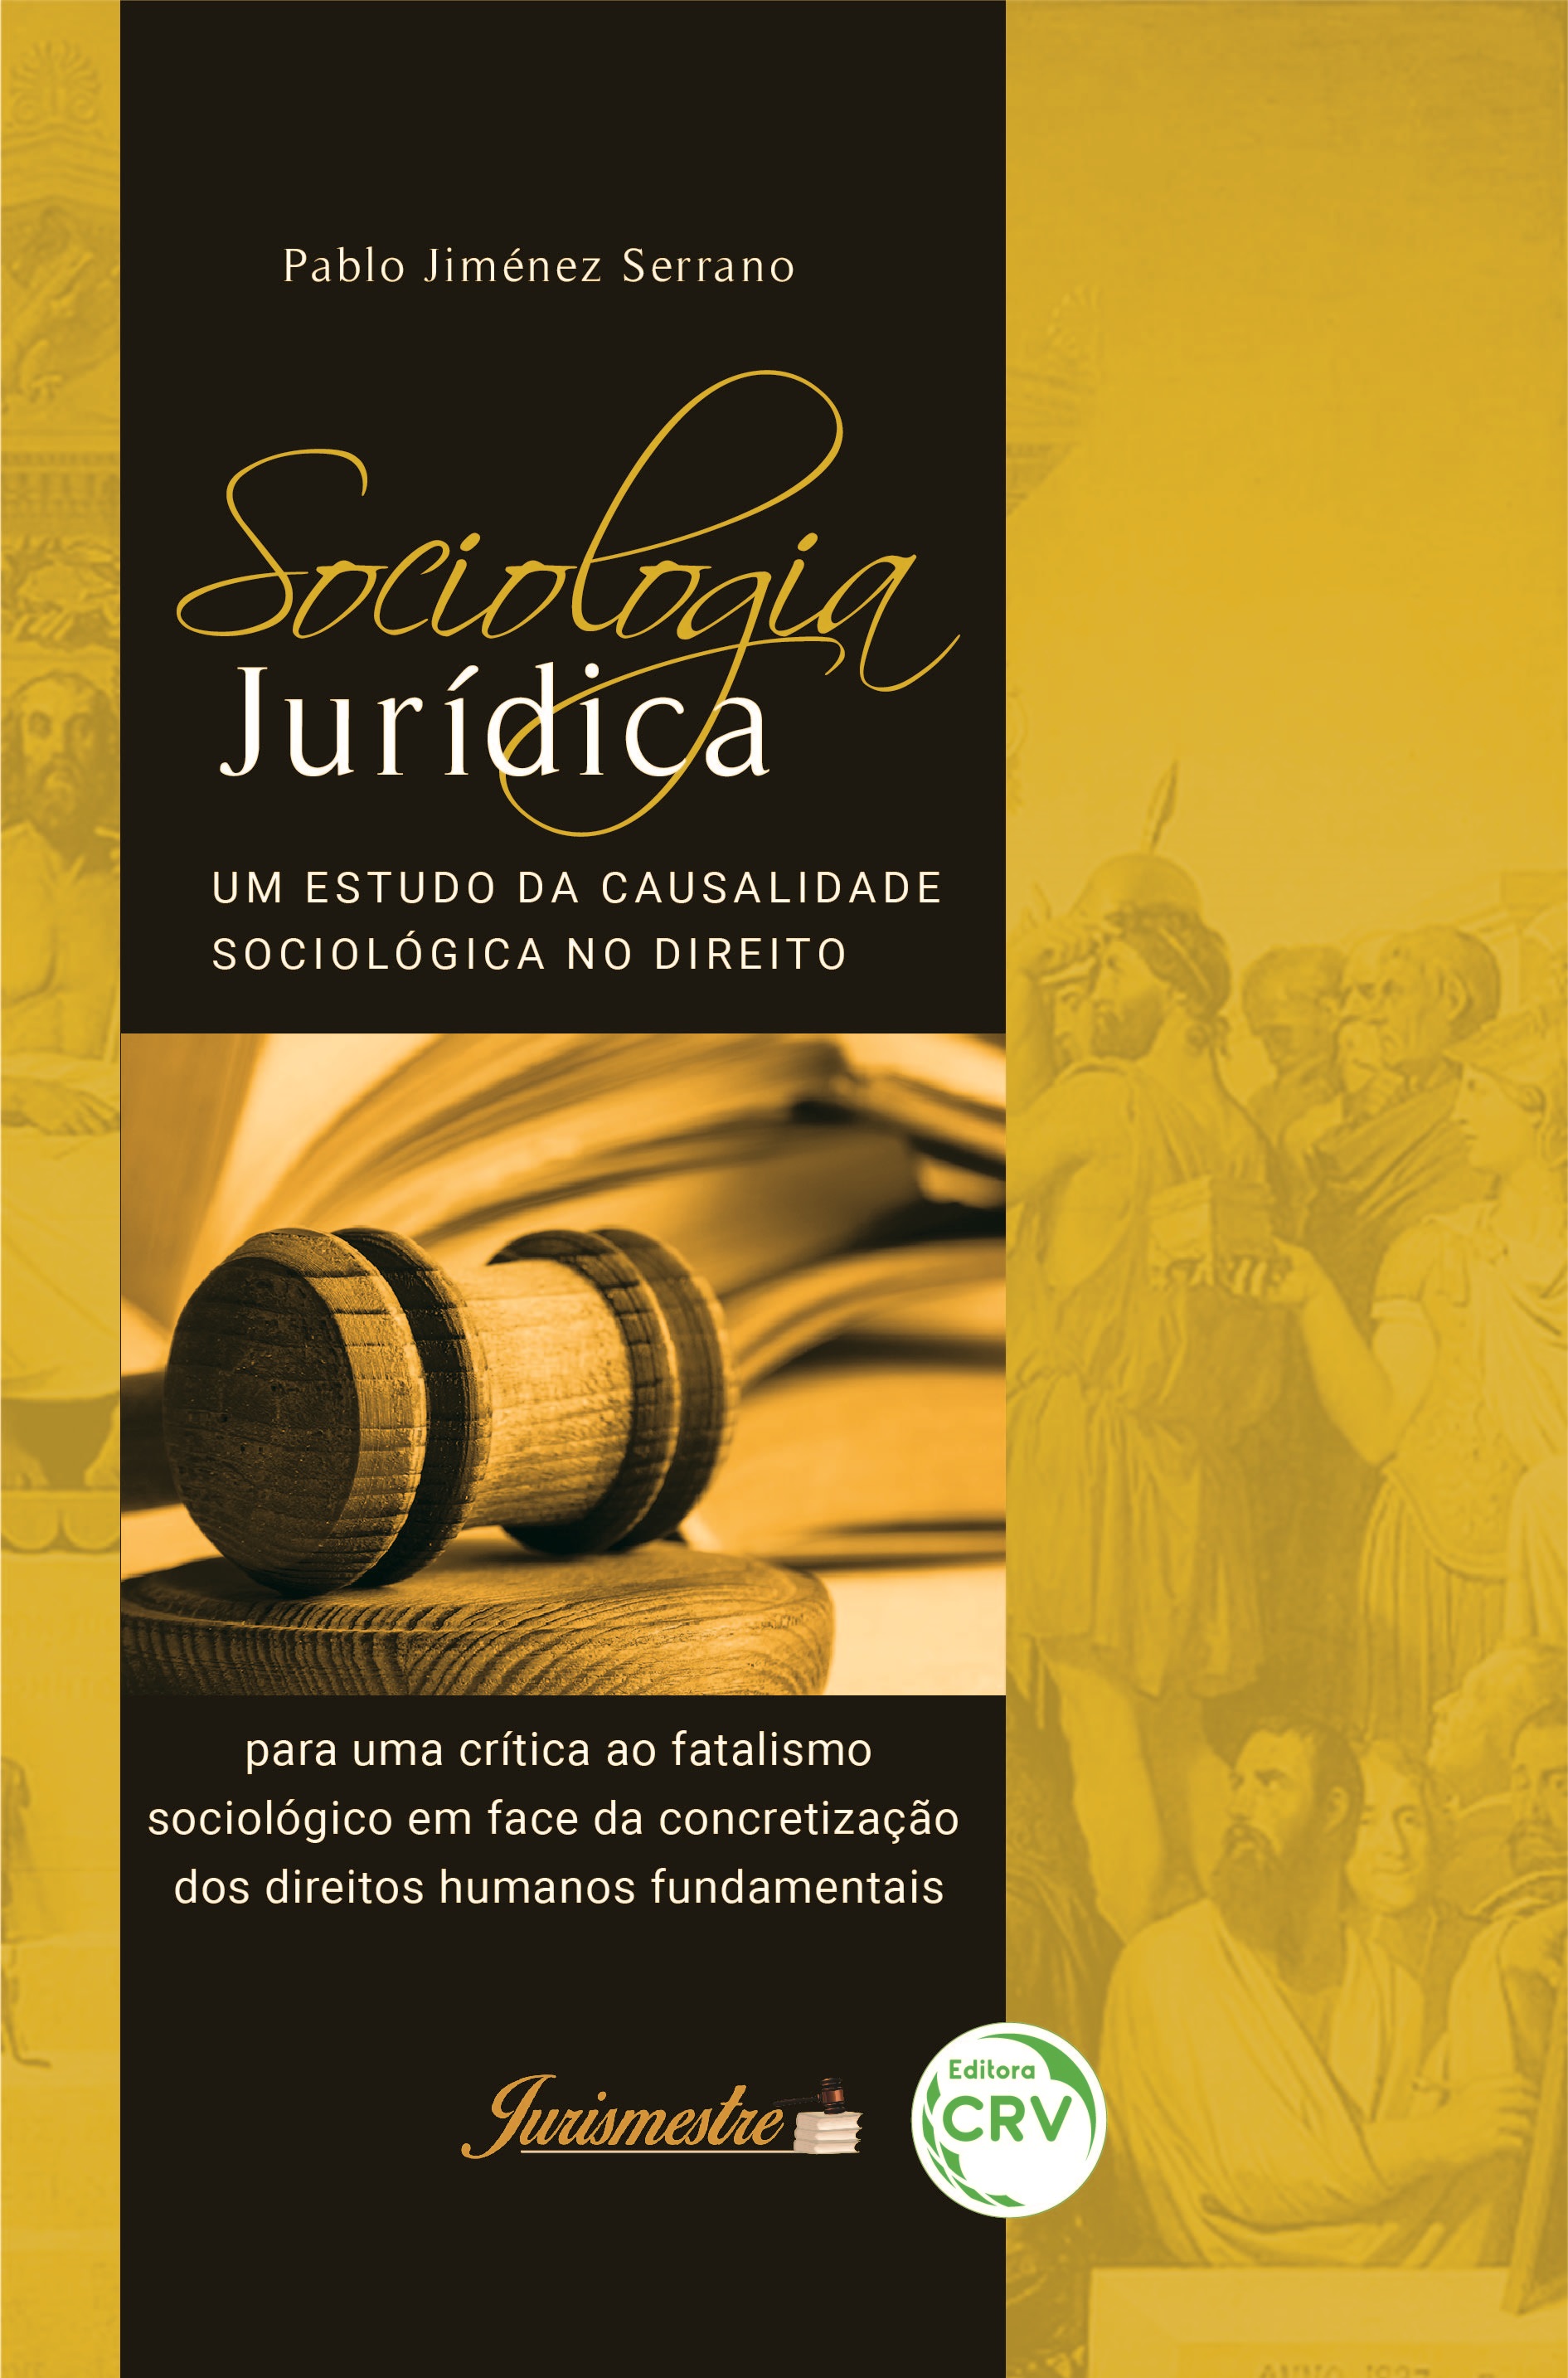 Capa do livro: SOCIOLOGIA JURÍDICA: <br>um estudo da causalidade sociológica no direito para uma crítica ao fatalismo sociológico em face da concretização dos direitos humanos fundamentais